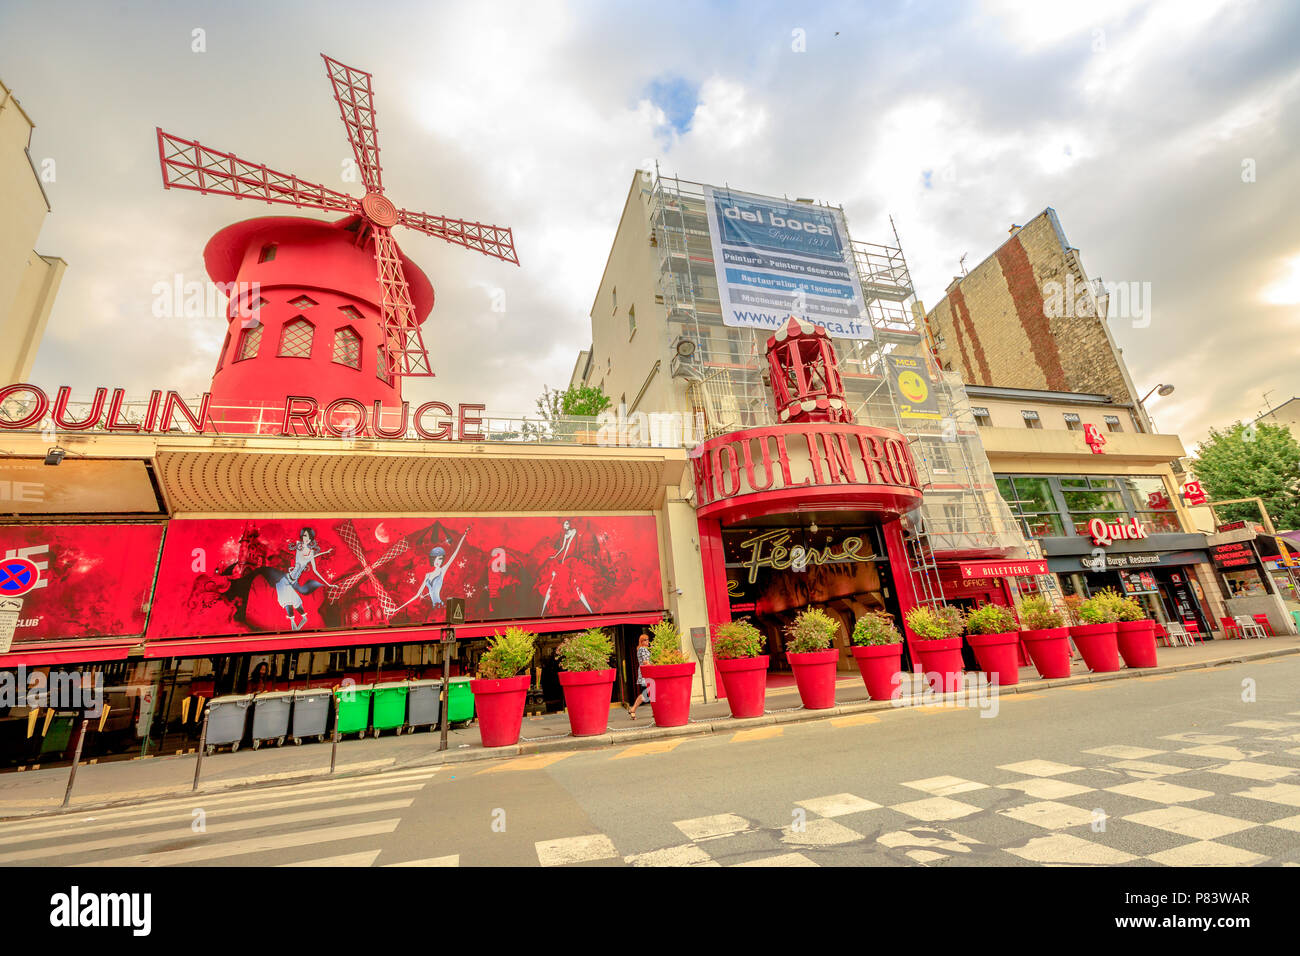 Paris, Frankreich, 1. Juli 2017: Boulevard de Clichy und Nachtclub Moulin Rouge in Pigalle rot leuchtet. Beliebtesten historischen Theater und Kabarett Attraktion von Paris. Tourismus in Paris Hauptstadt Stockfoto